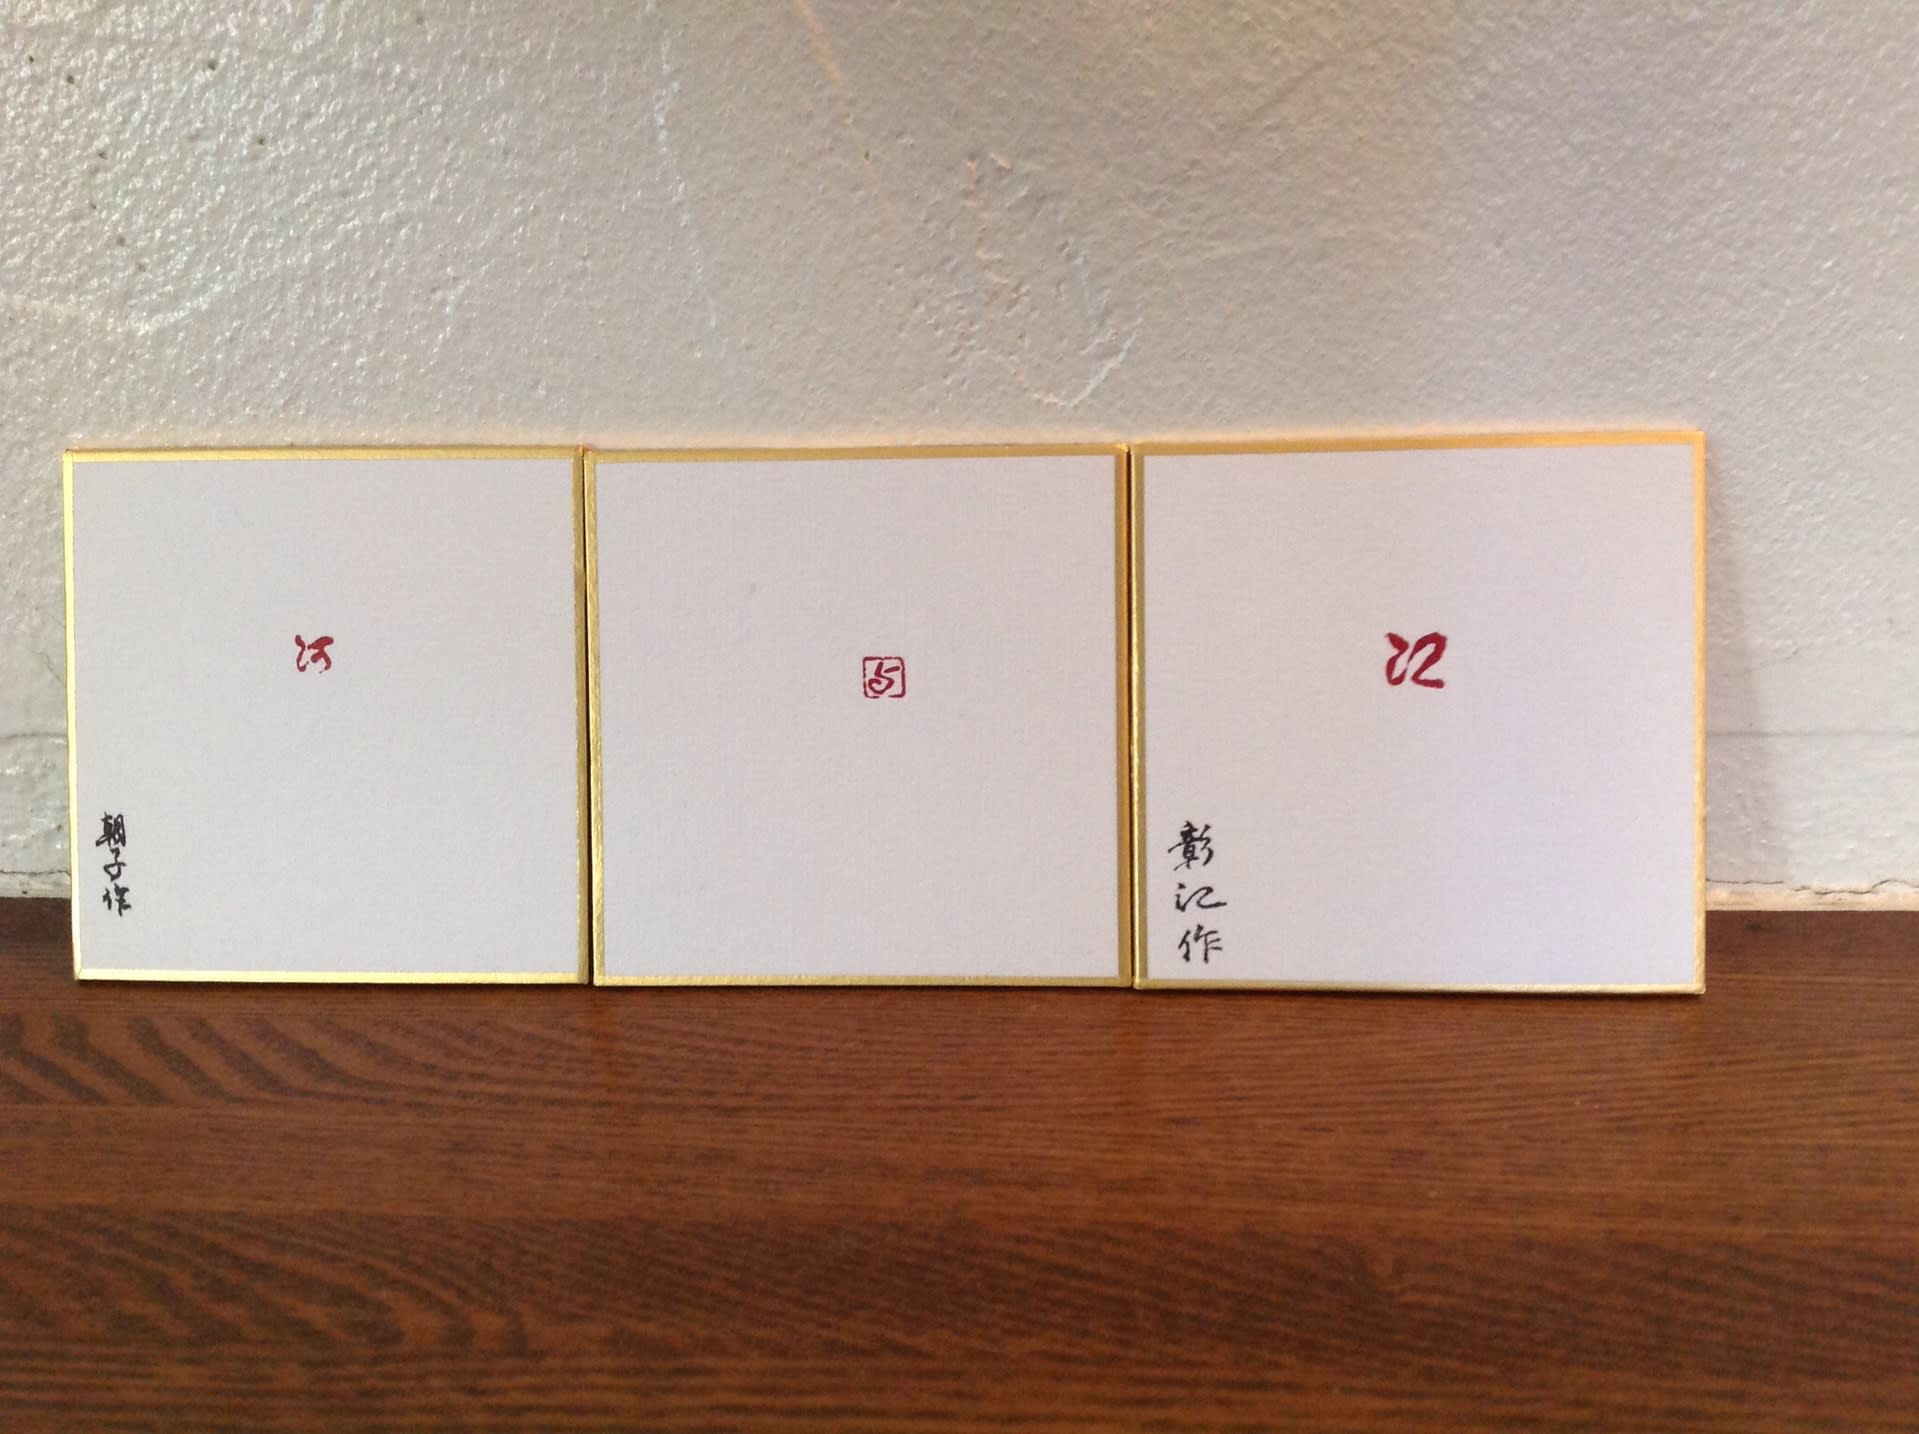 篆刻の作品 Http Hiroyou Bandou Crayonsite Net古典から漢字 仮名を学びつつ筆耕の仕事伝授致します